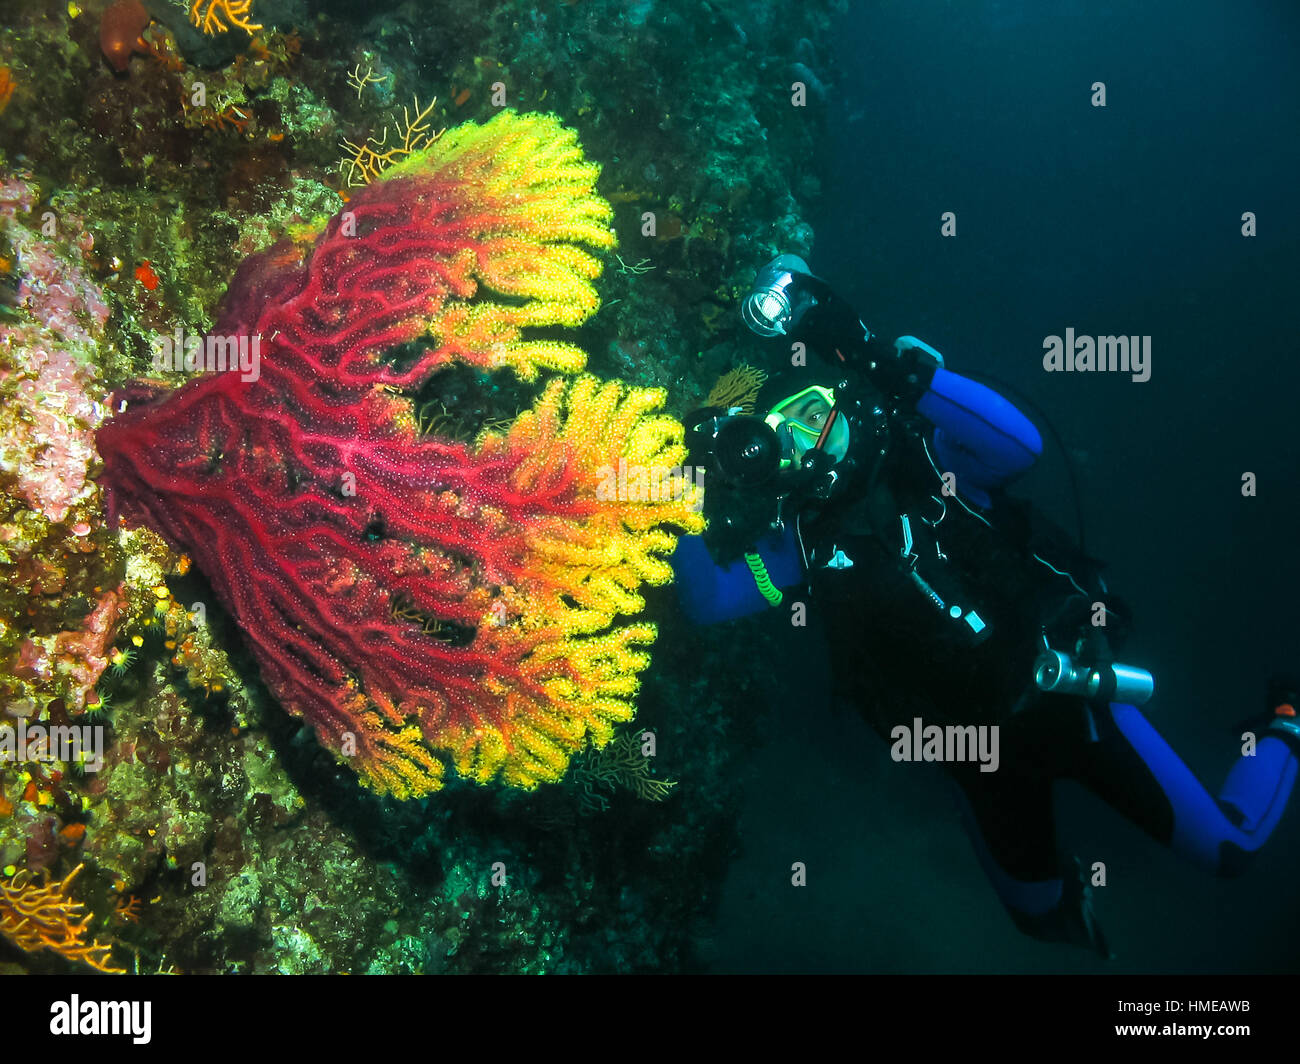 Unterwasser-Fotograf nimmt ein Bild von einer Koralle. Seascape Natur ambient Schuss Scuba Aktivität und Tierwelt. Aktiver Urlaub und Natur er- Stockfoto